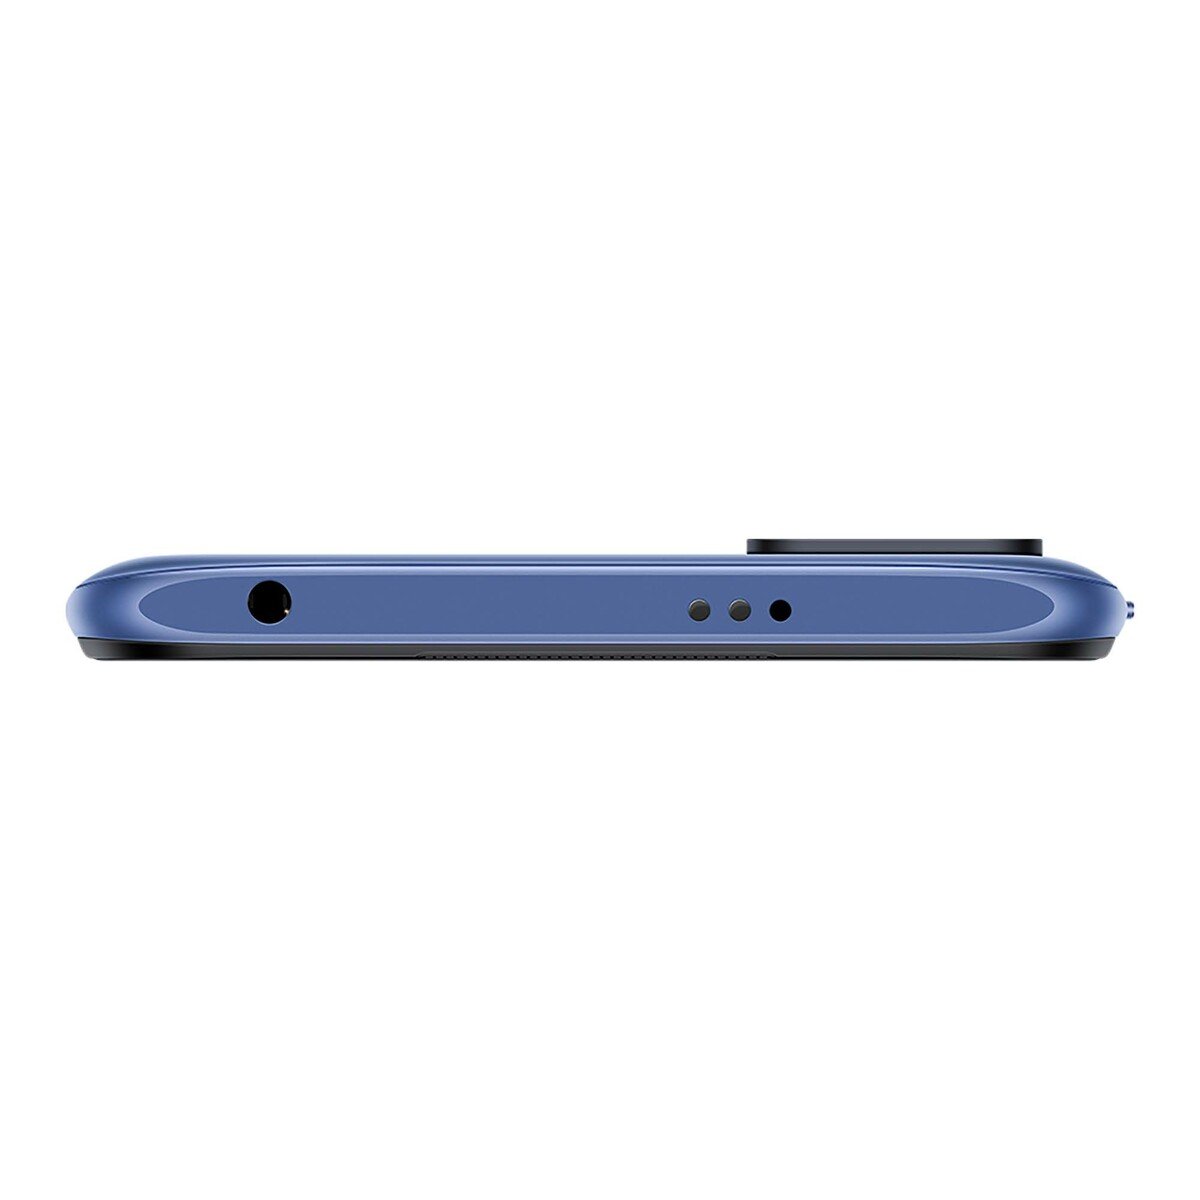 Xiaomi Redmi Note 10 5G, 4GB,128GB,Nighttime Blue